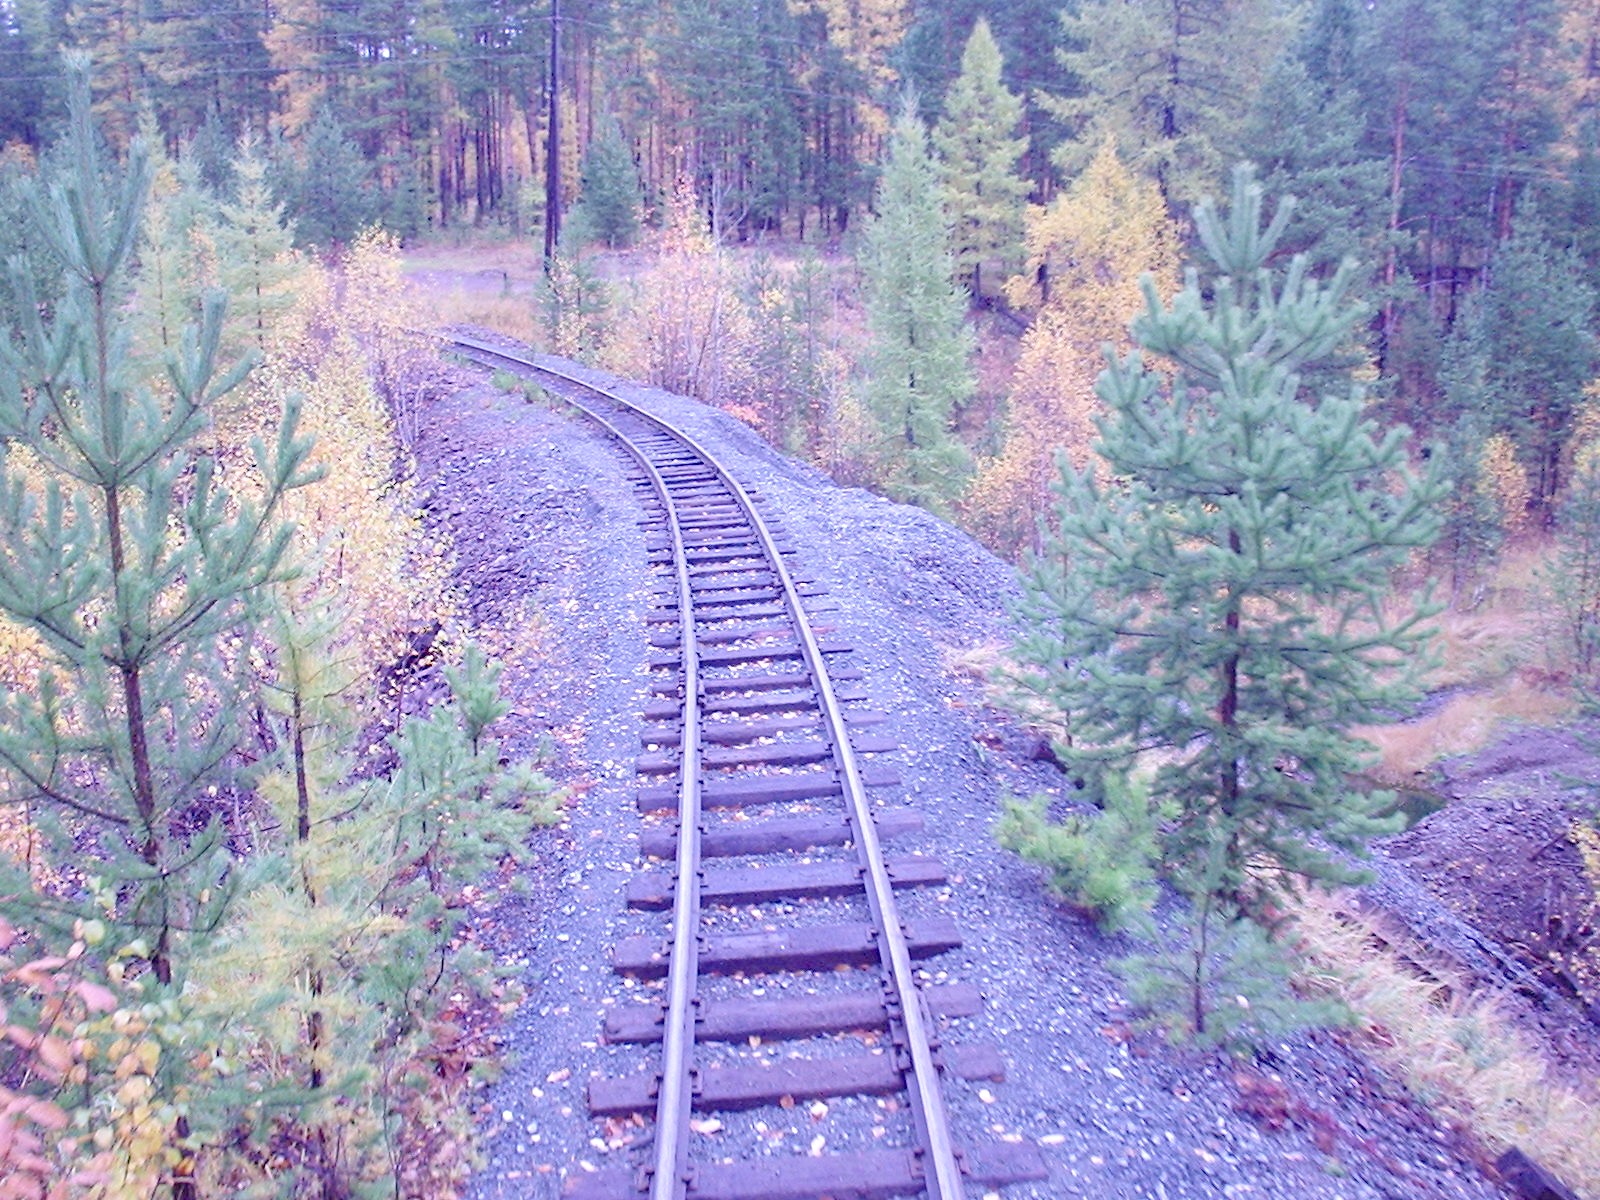 Висимо-Уткинская узкоколейная железная дорога  - фотографии, сделанные в 2006 году (часть 7)